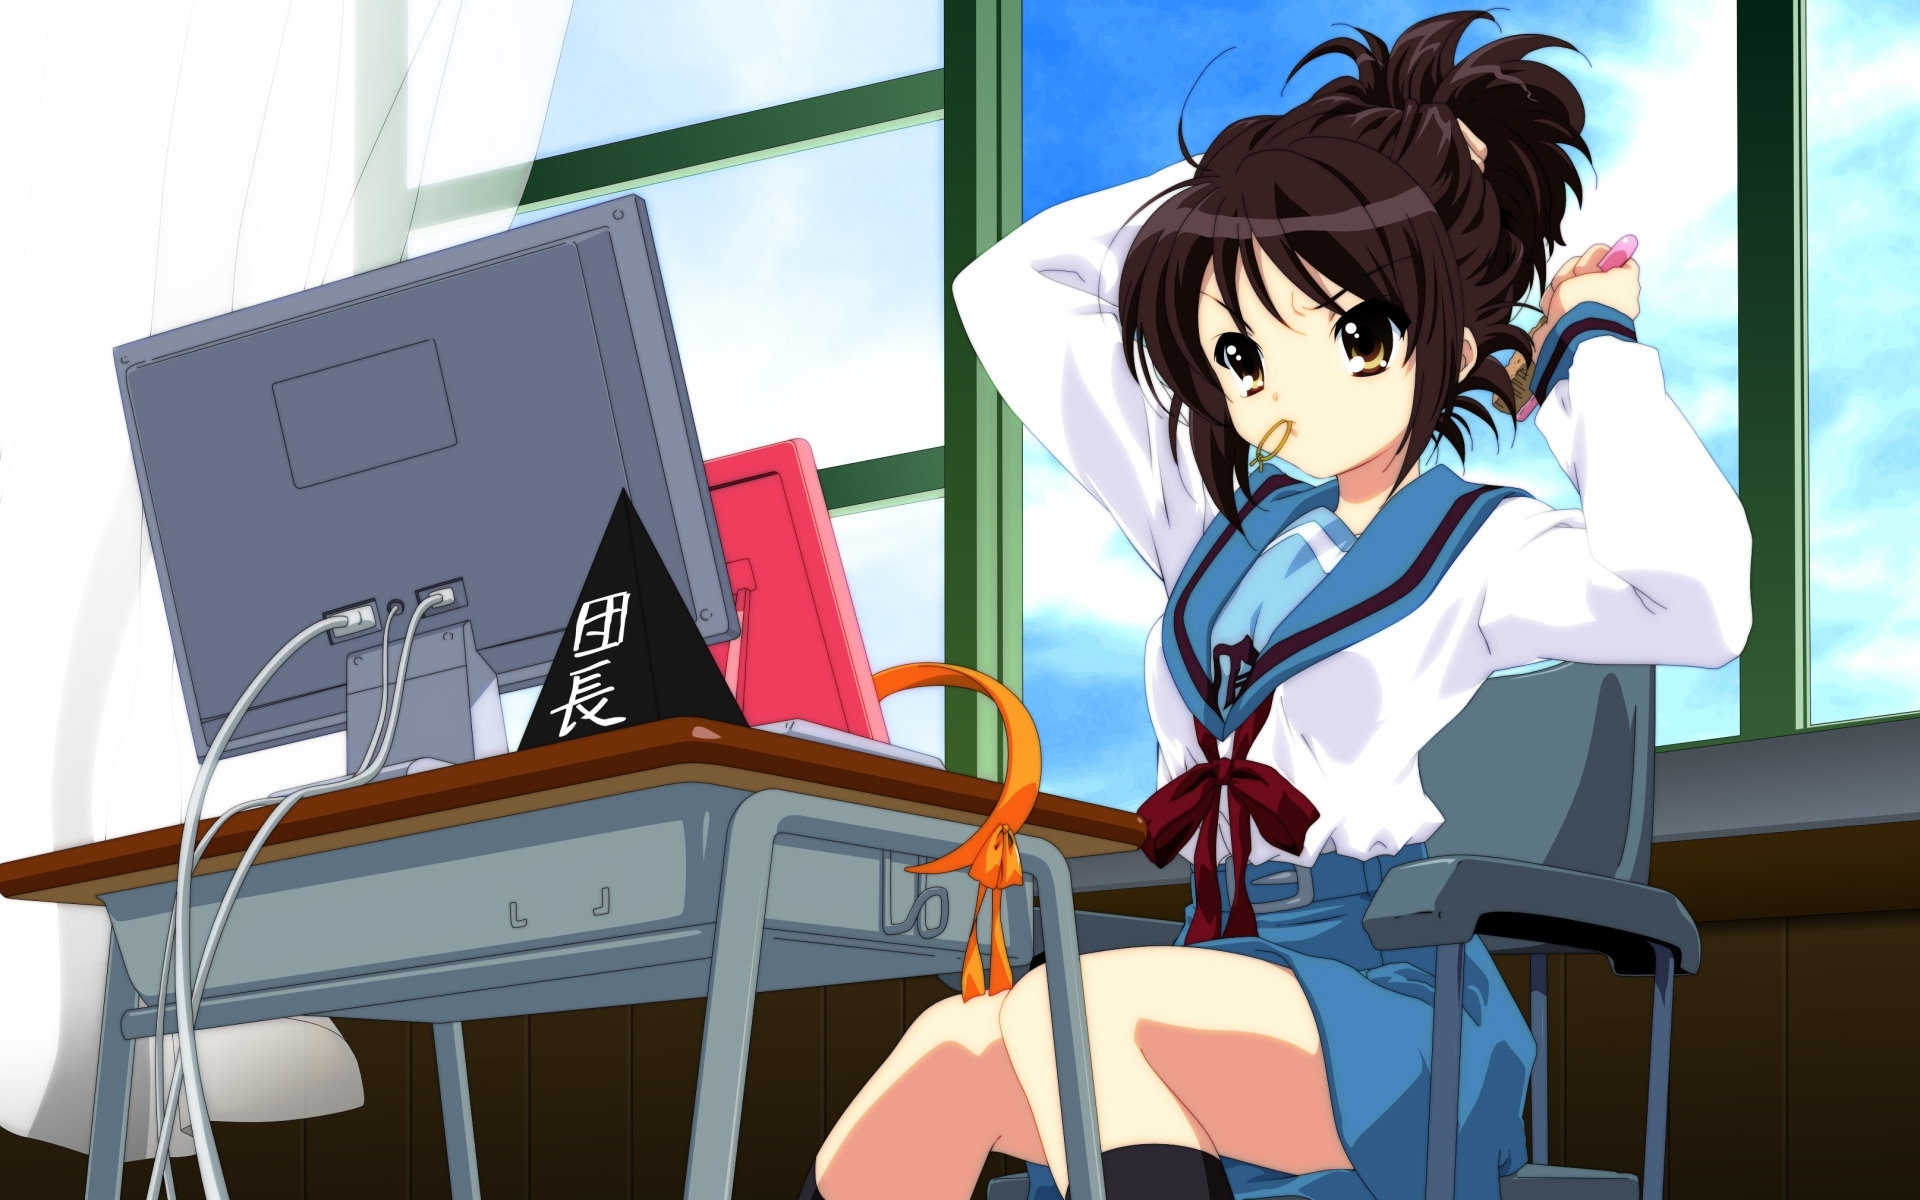 Descarga gratuita de fondo de pantalla para móvil de Chicas, Anime.